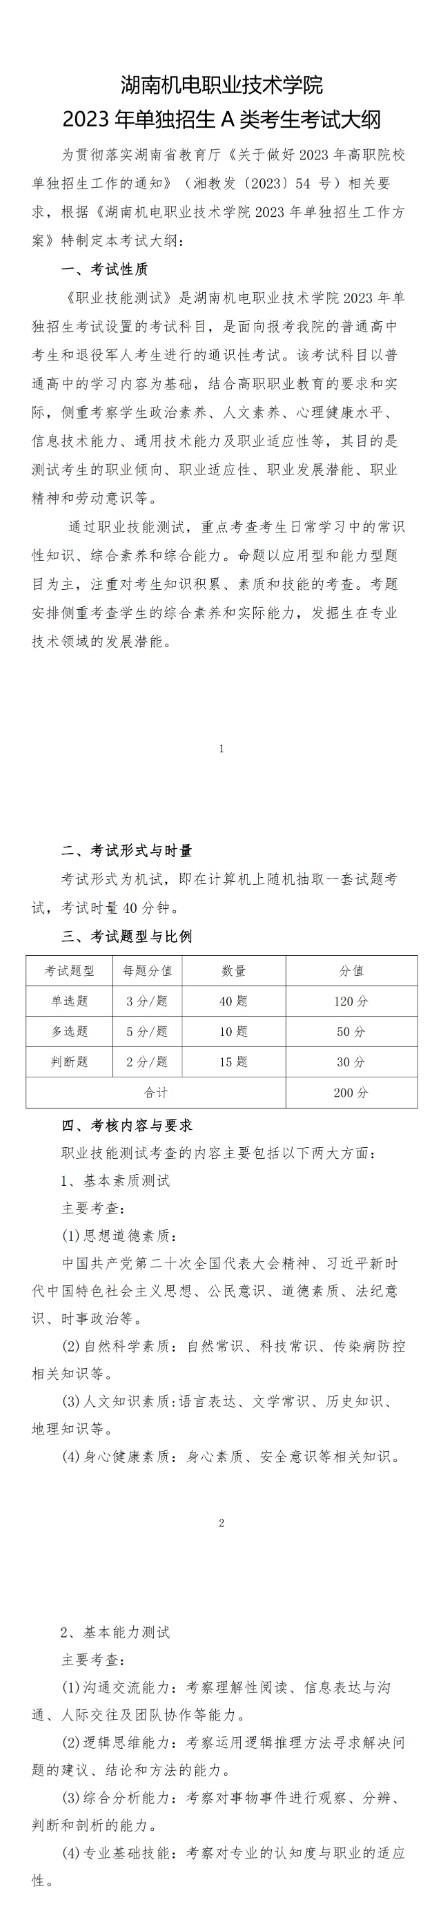 湖南机电职业技术学院2023年单独招生A类考生考试大纲